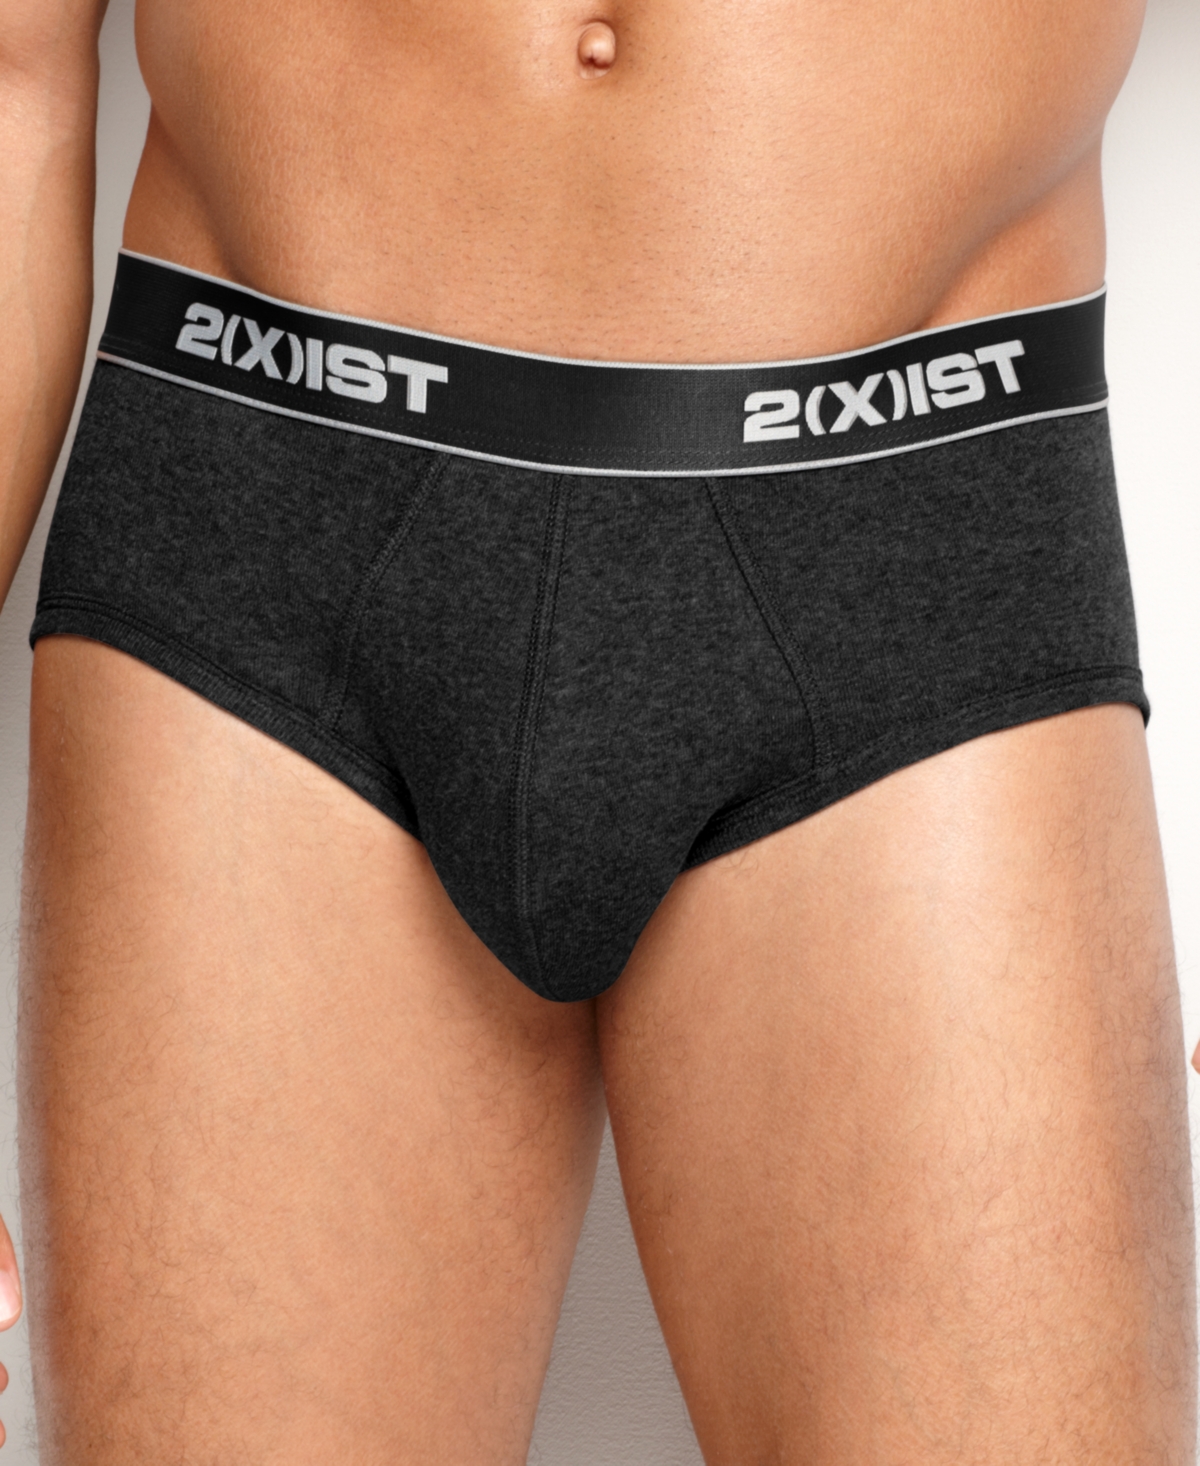 2(x)ist Men's Underwear, Essentials Contour Pouch Brief 3 Pack In Black,char